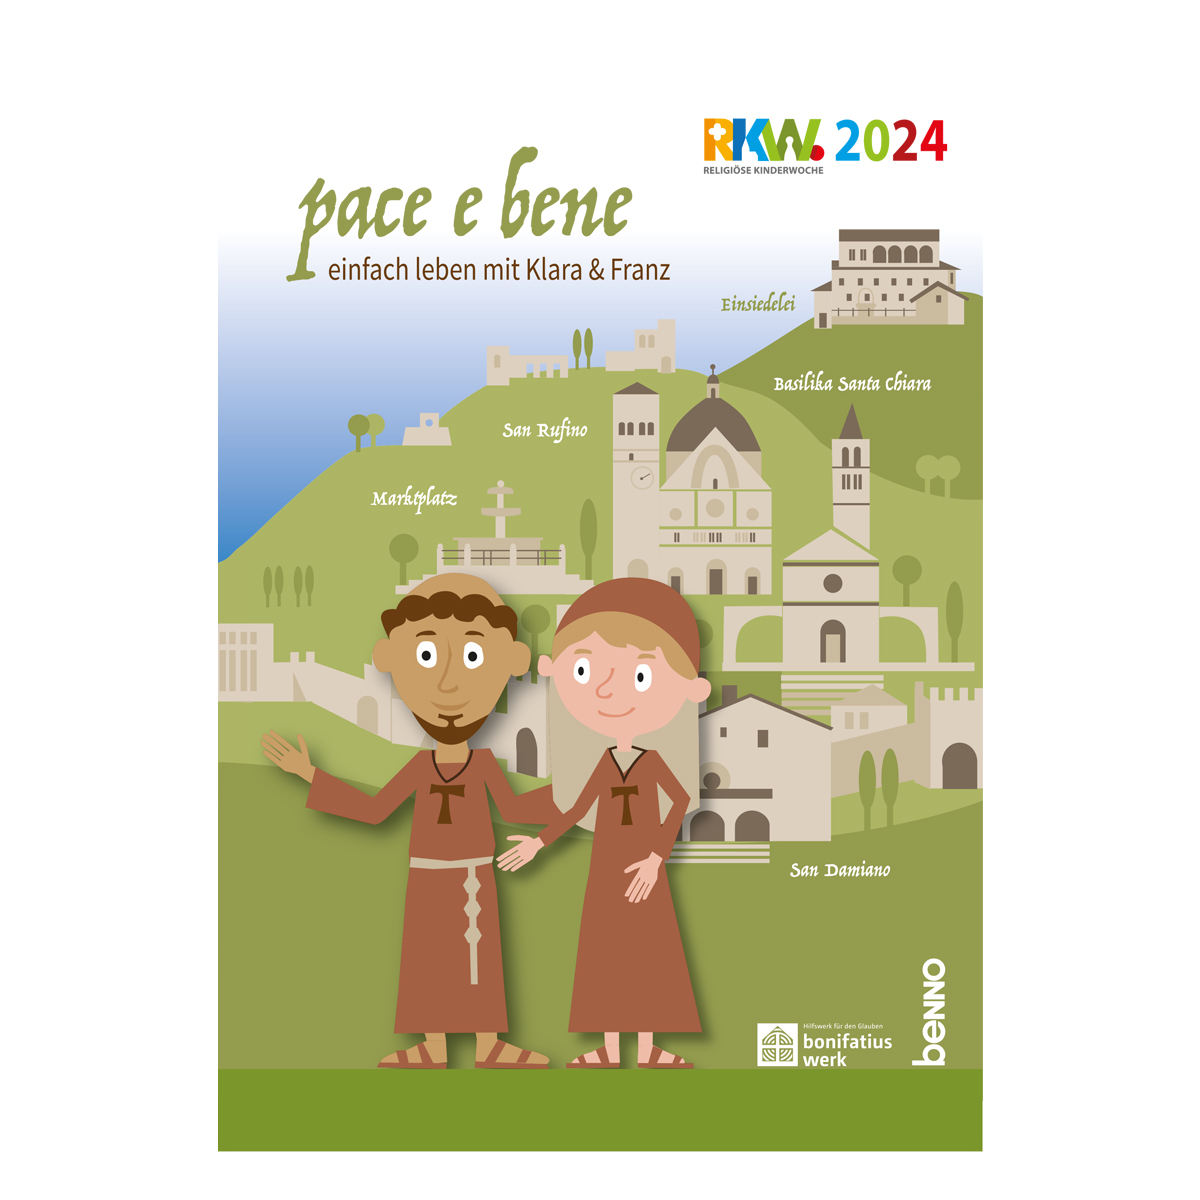 Plakat A2 »pace e bene – einfach leben mit Klara & Franz« – RKW 2024 von St. Benno Verlag